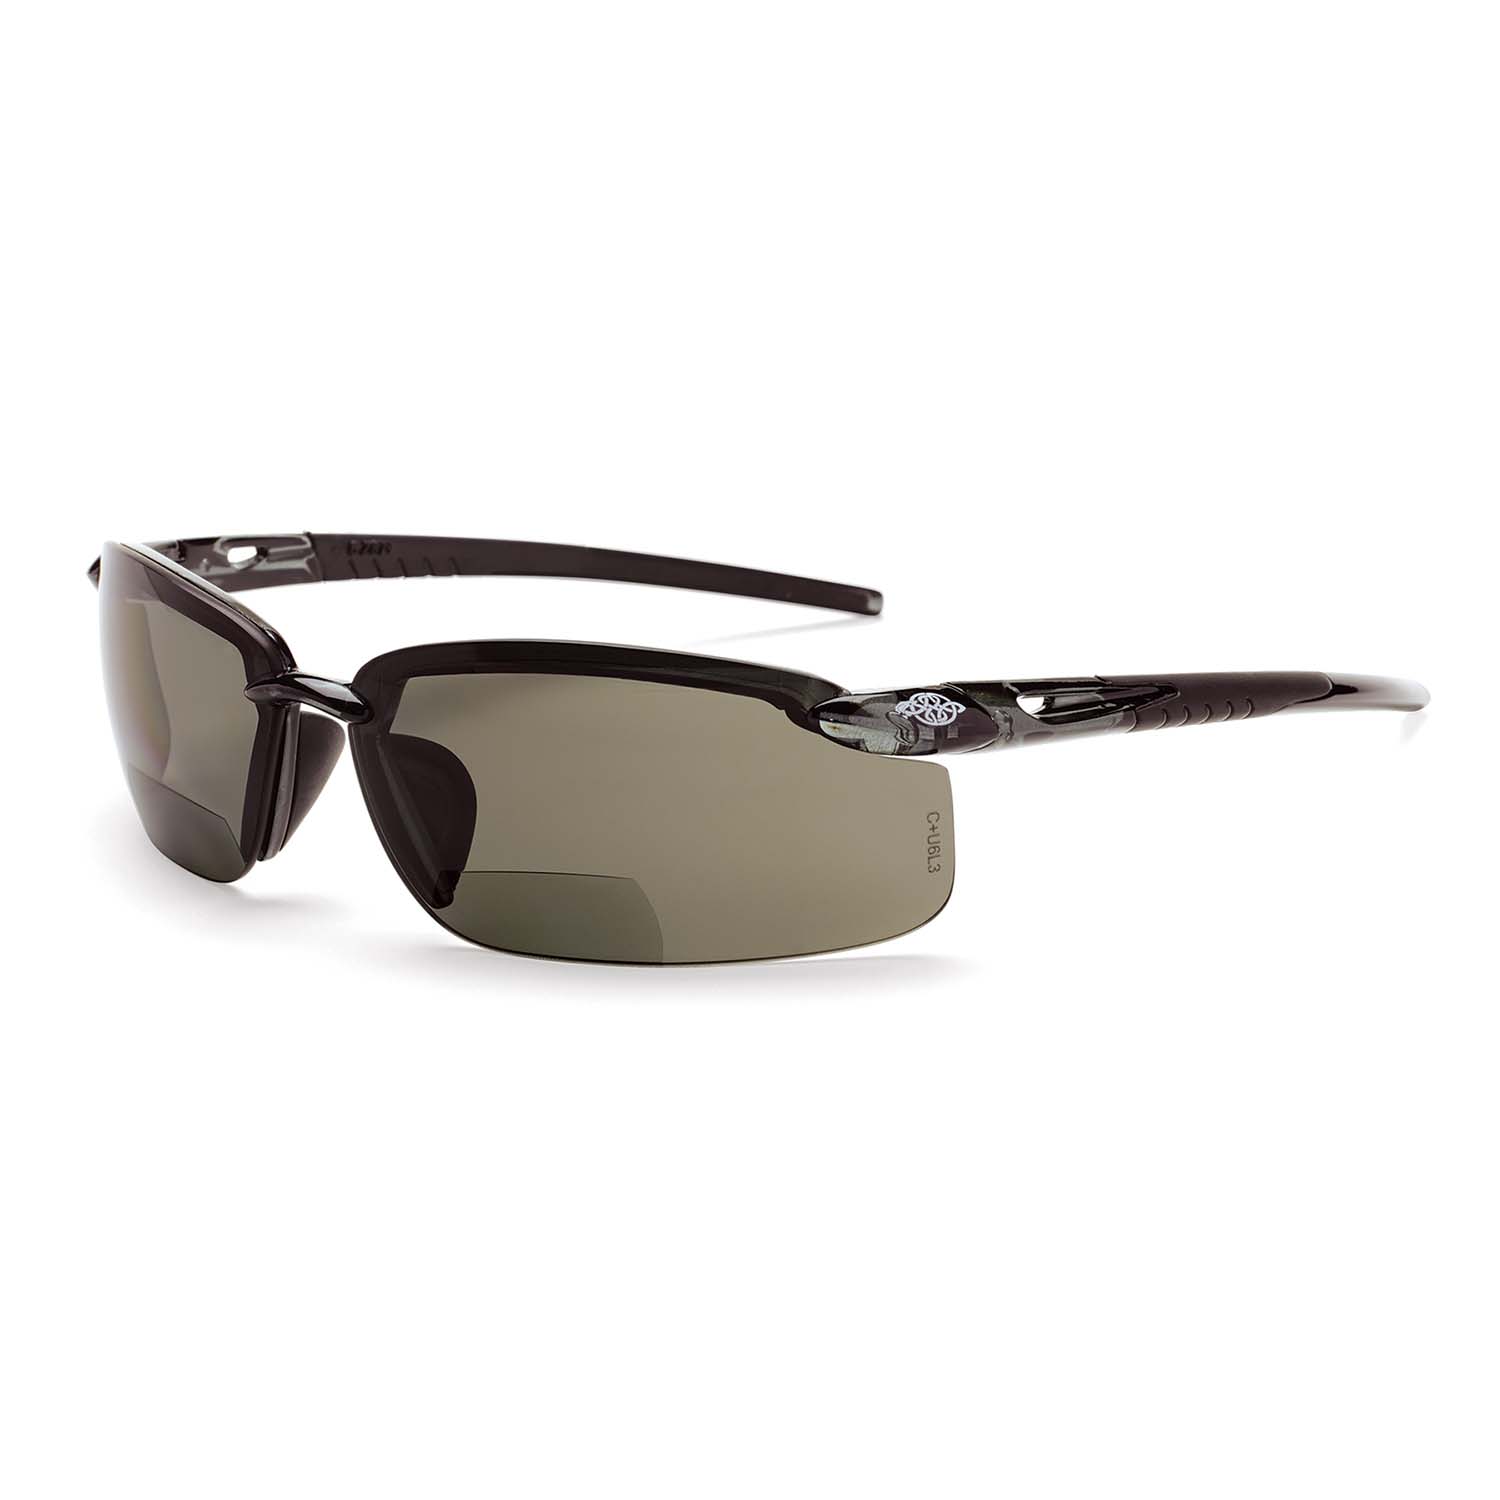 ES5 Bifocal Safety Eyewear - Crystal Black Frame - Polarized Smoke Lens - 2.5 Diopter